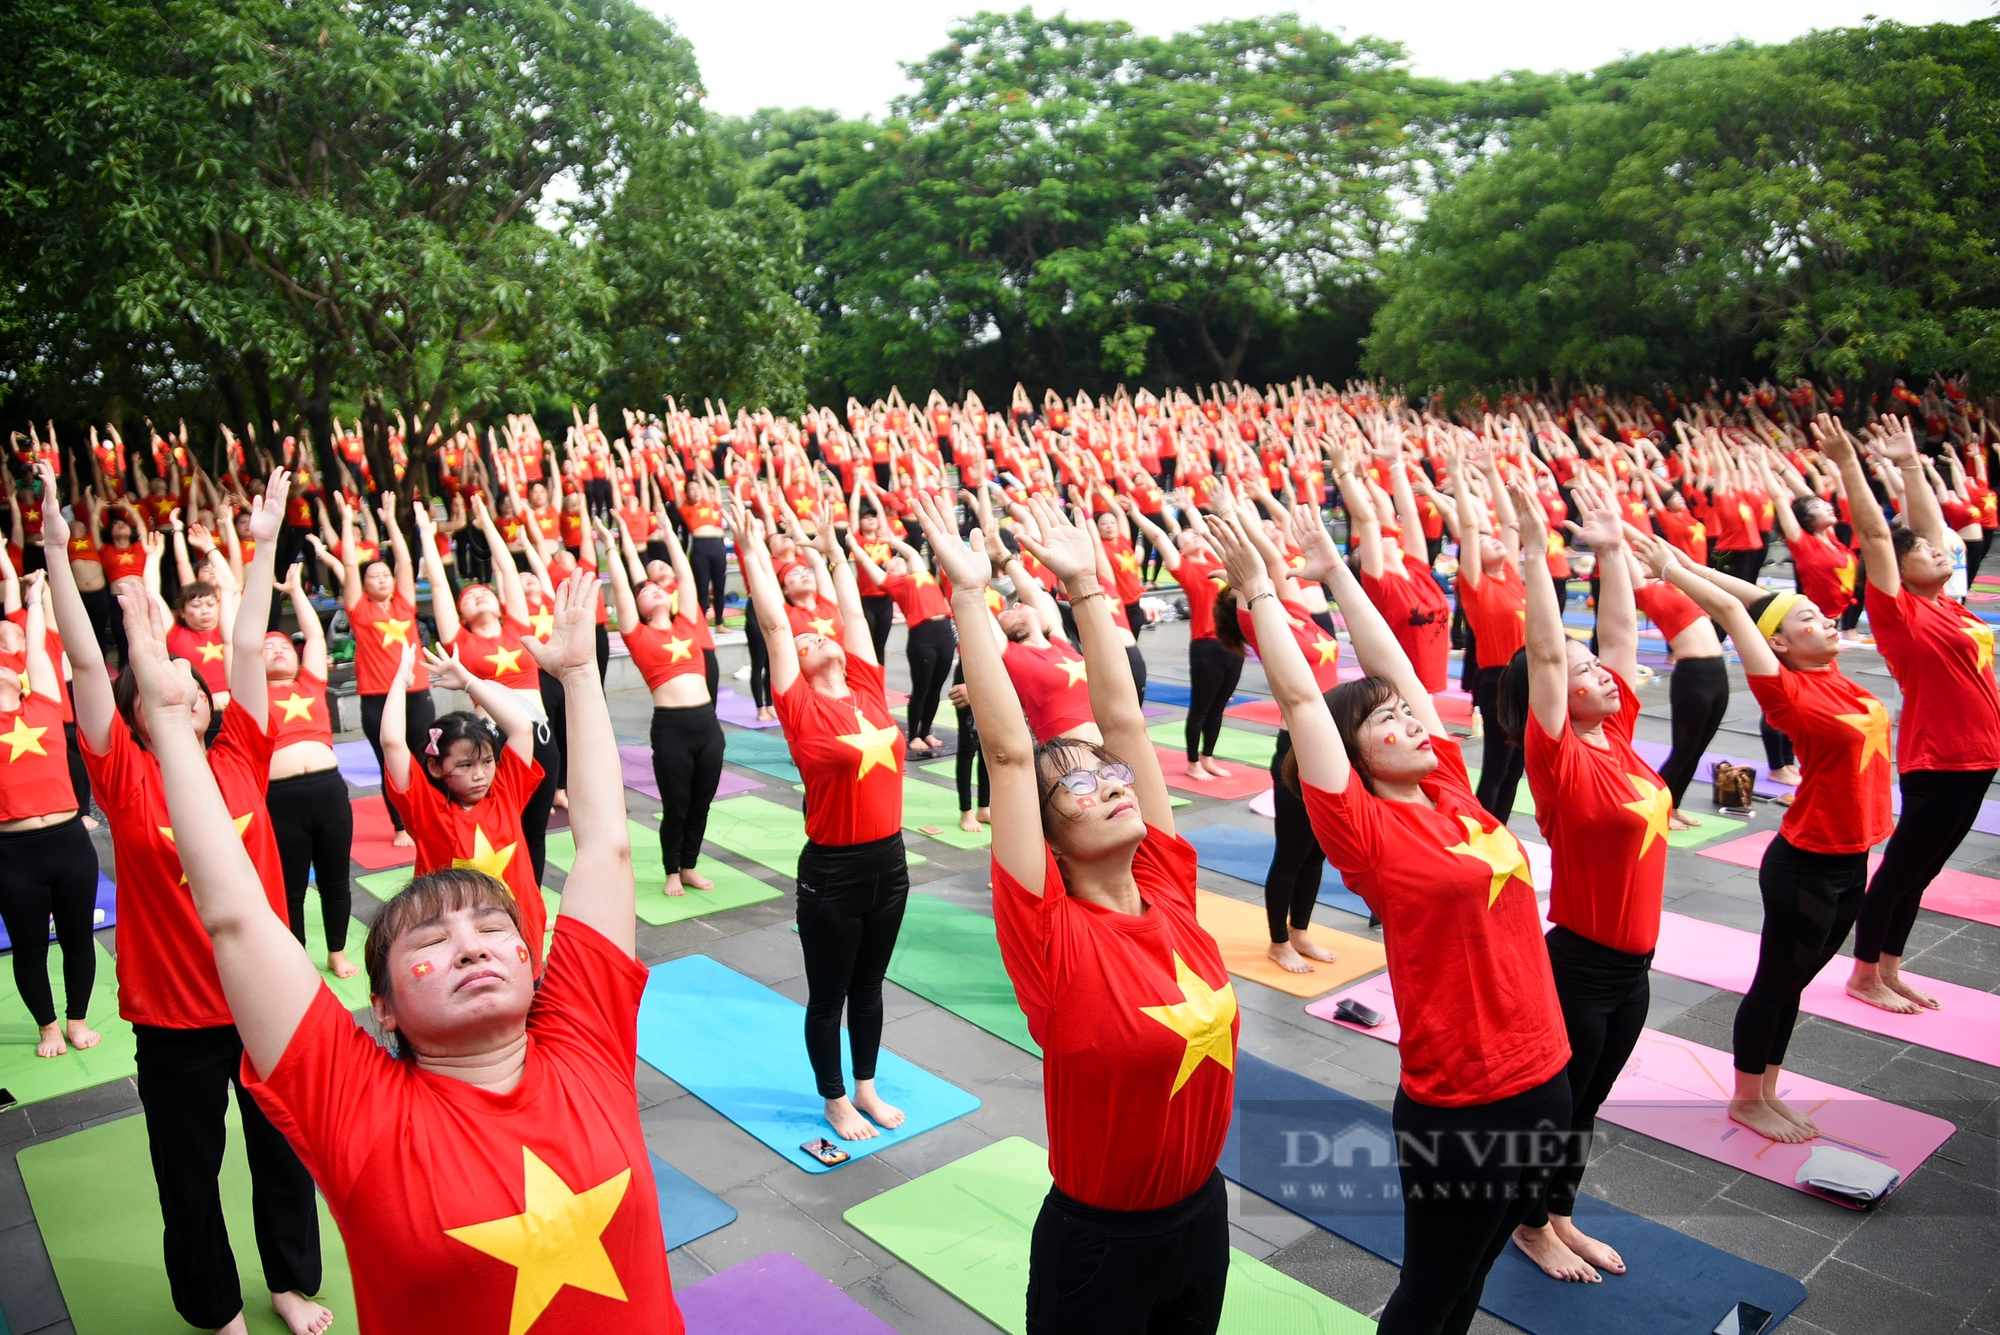 Hơn 1.000 người tham gia đồng diễn nhân kỷ niệm ngày quốc tế Yoga tại Hà Nội - Ảnh 10.